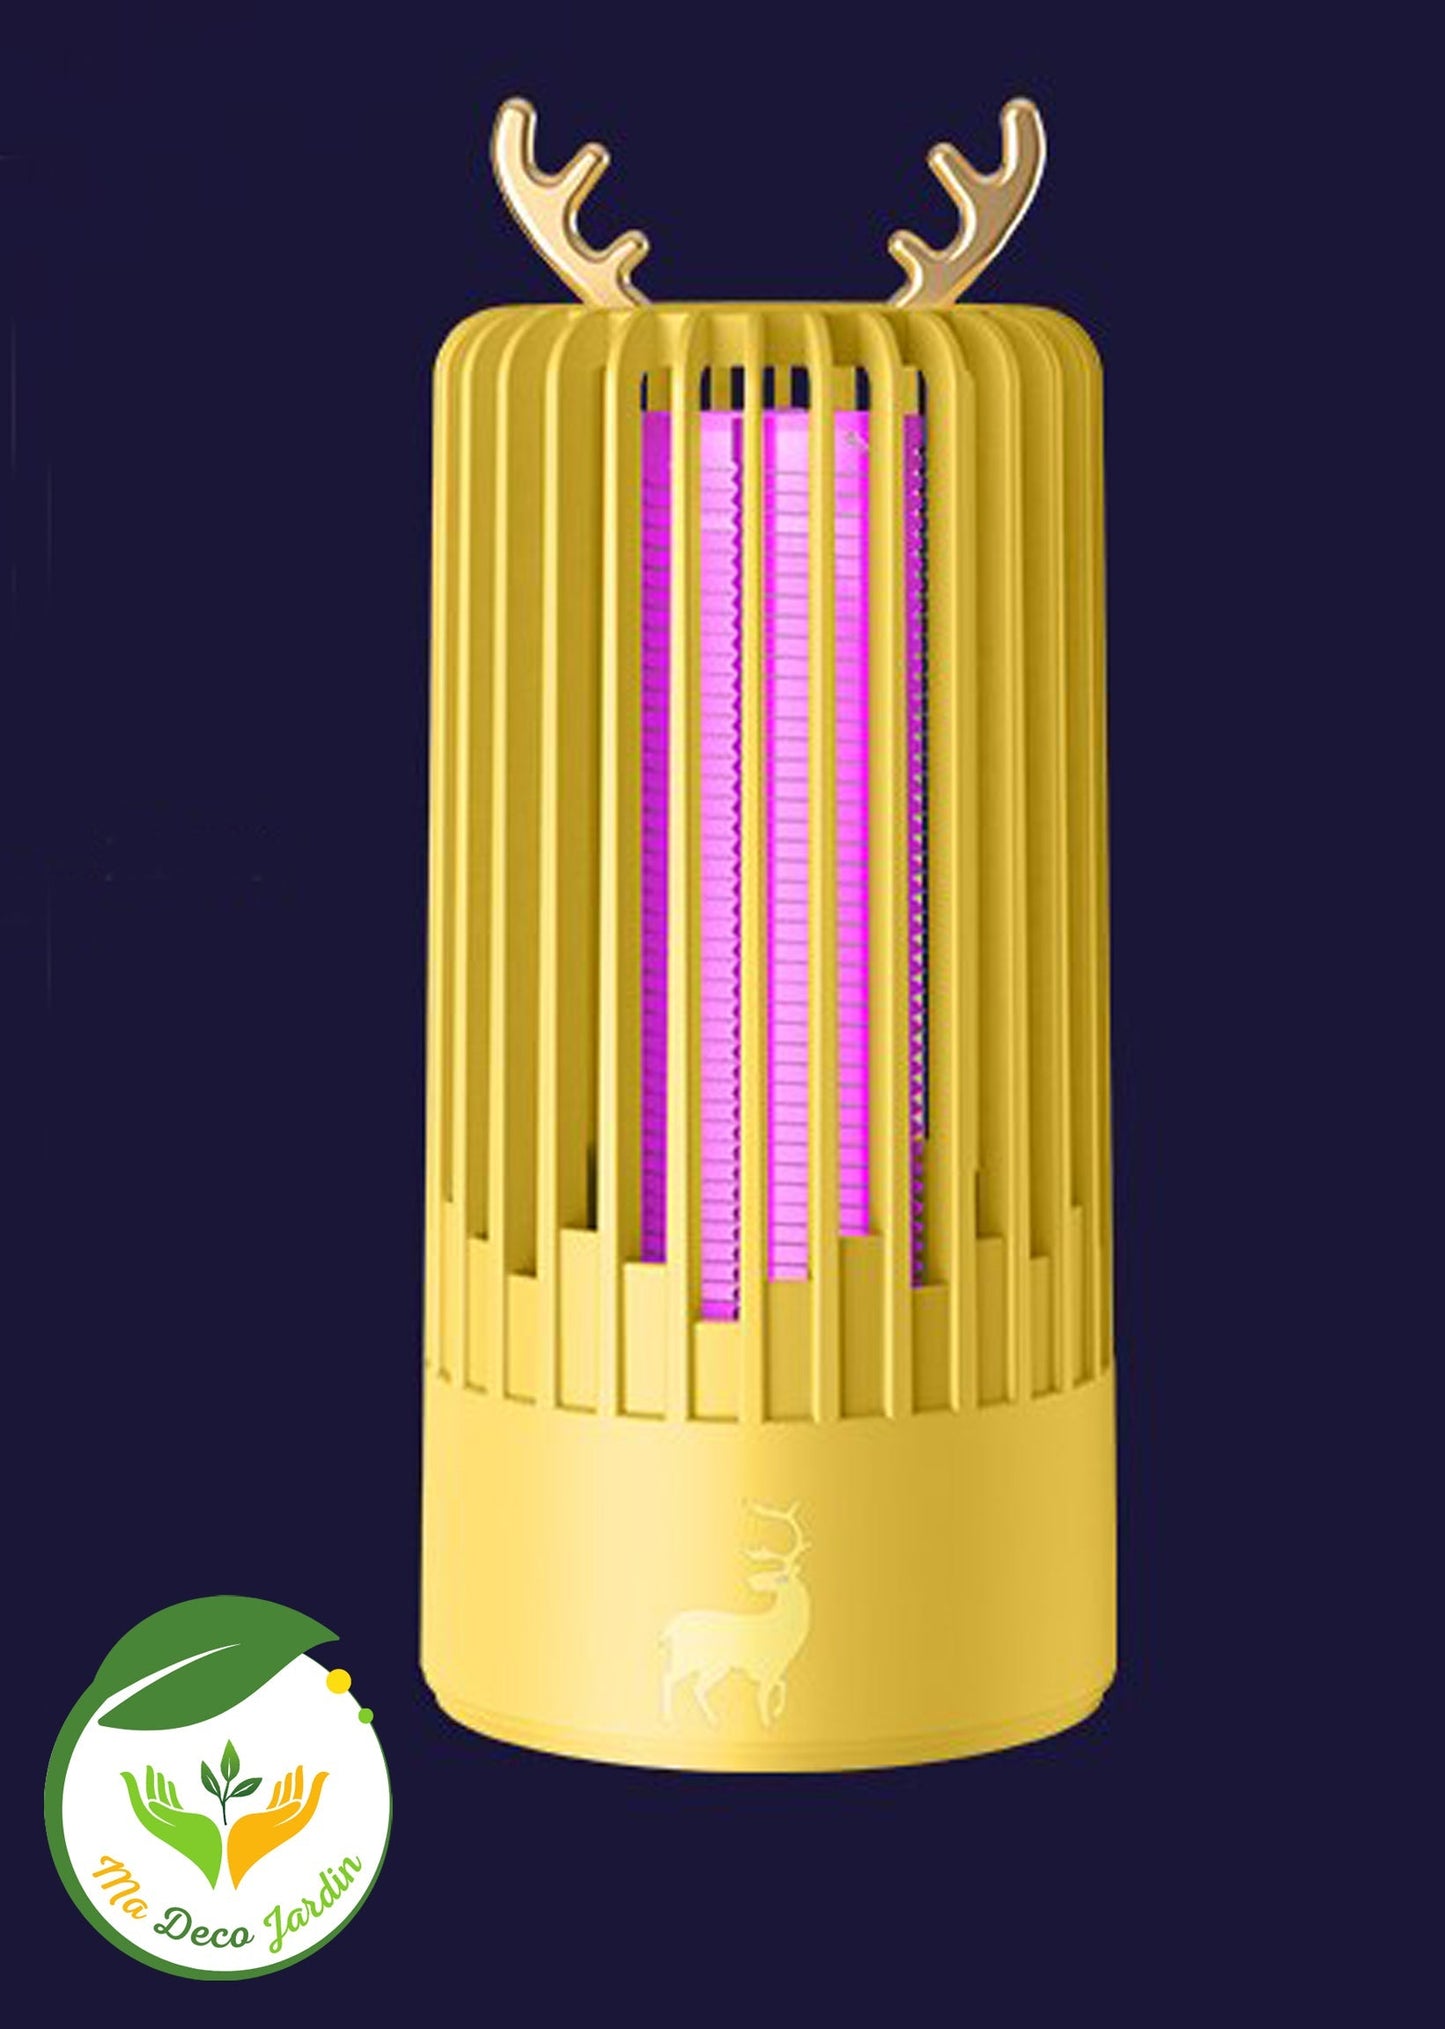 lampe anti moustique | MONTINIGRO™ - Premium anti moustique from Ma-déco-Jardin - Just $29.90! Shop now at Ma deco Jardin